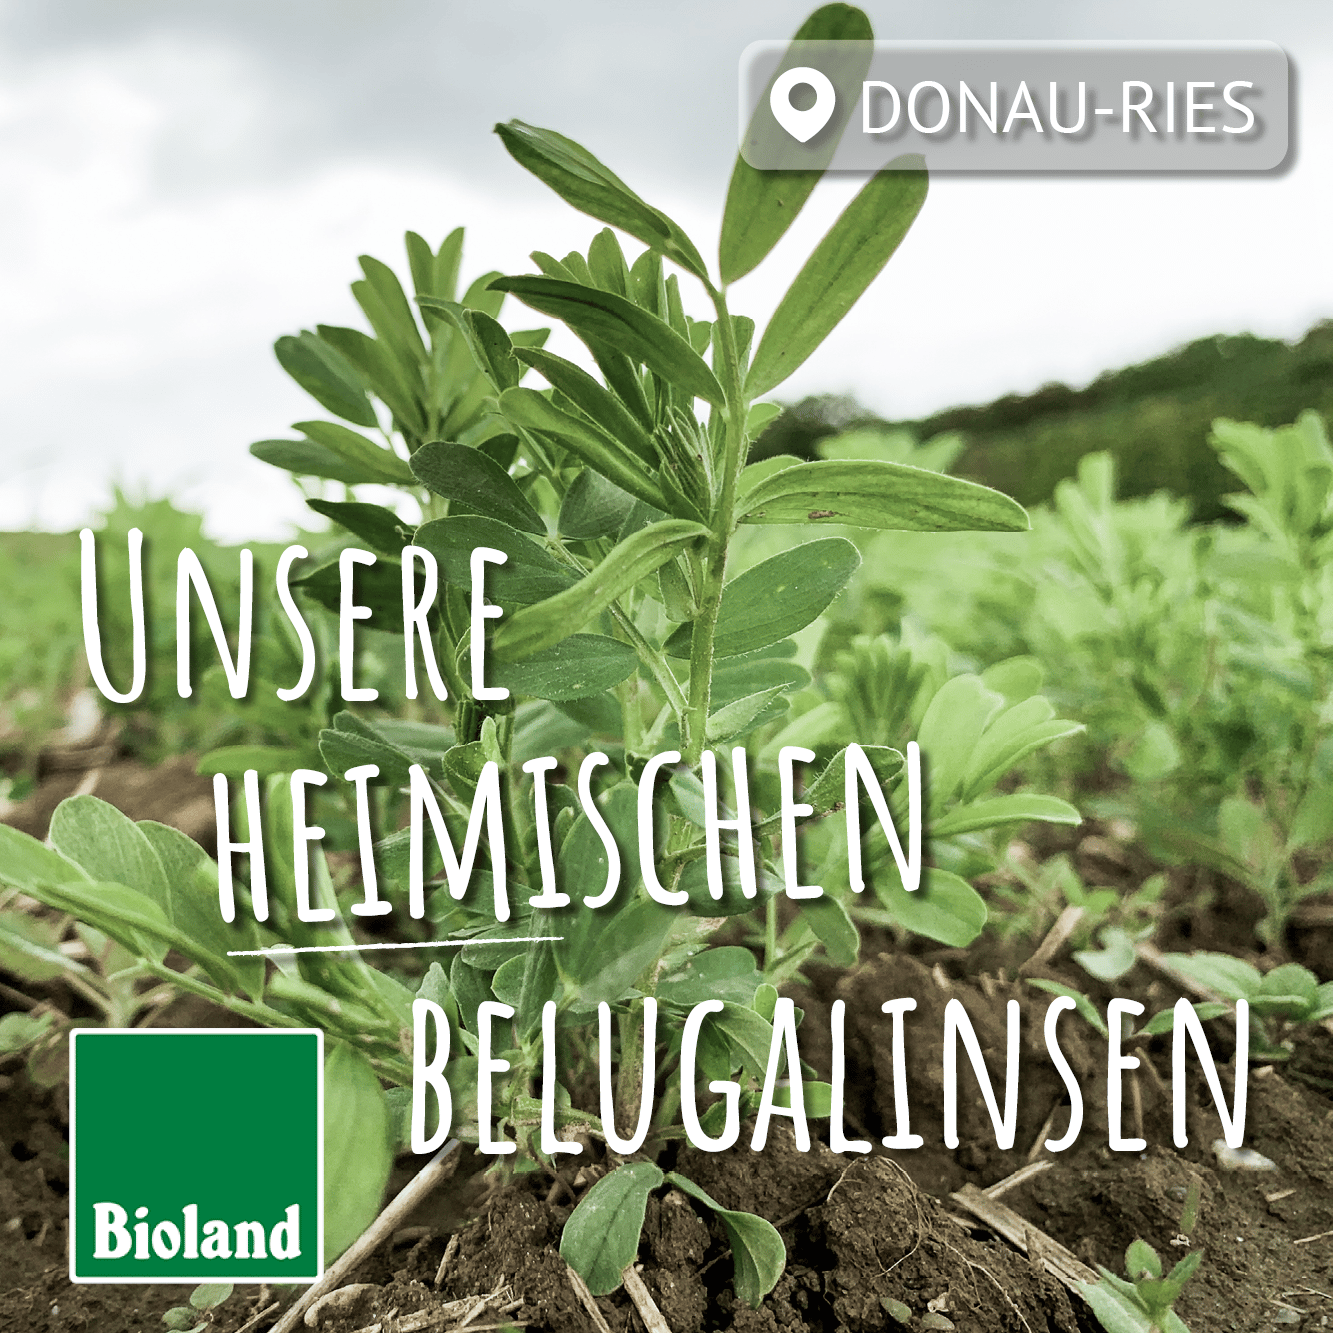 belugalinsen pflanze mit aufschrift "unsere heimischen belugalinsen"